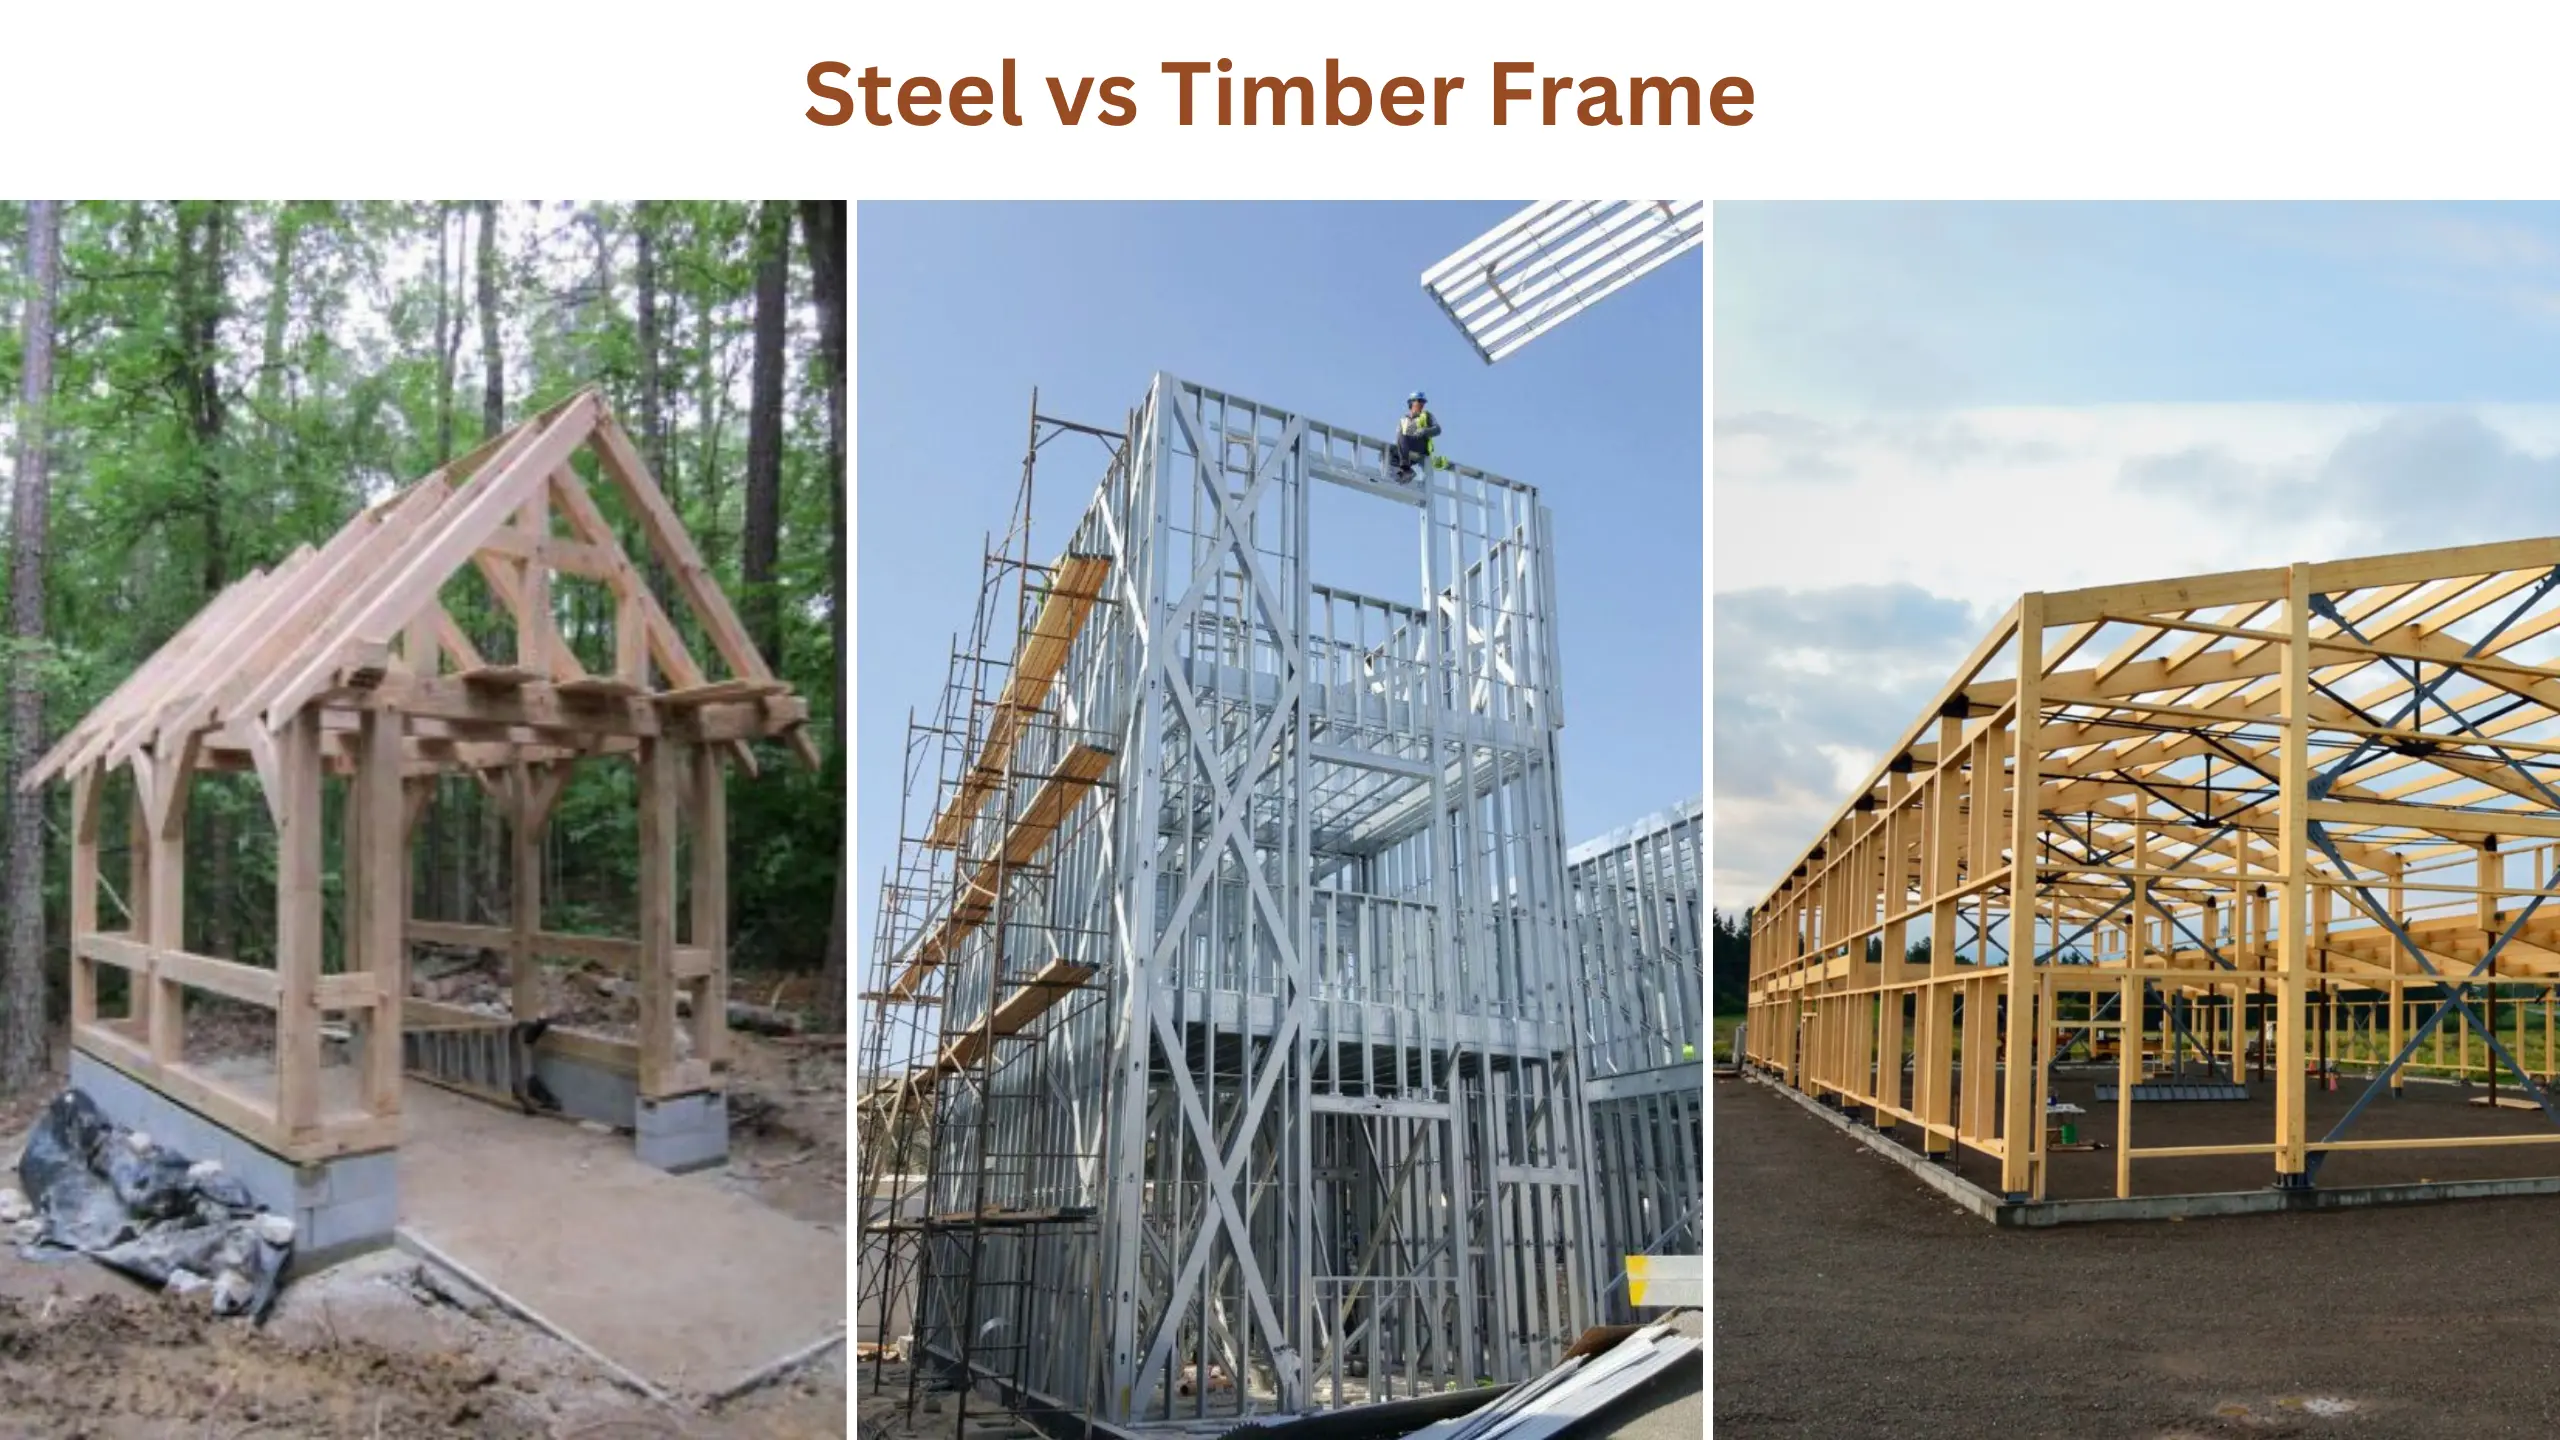 Steel vs timber frame